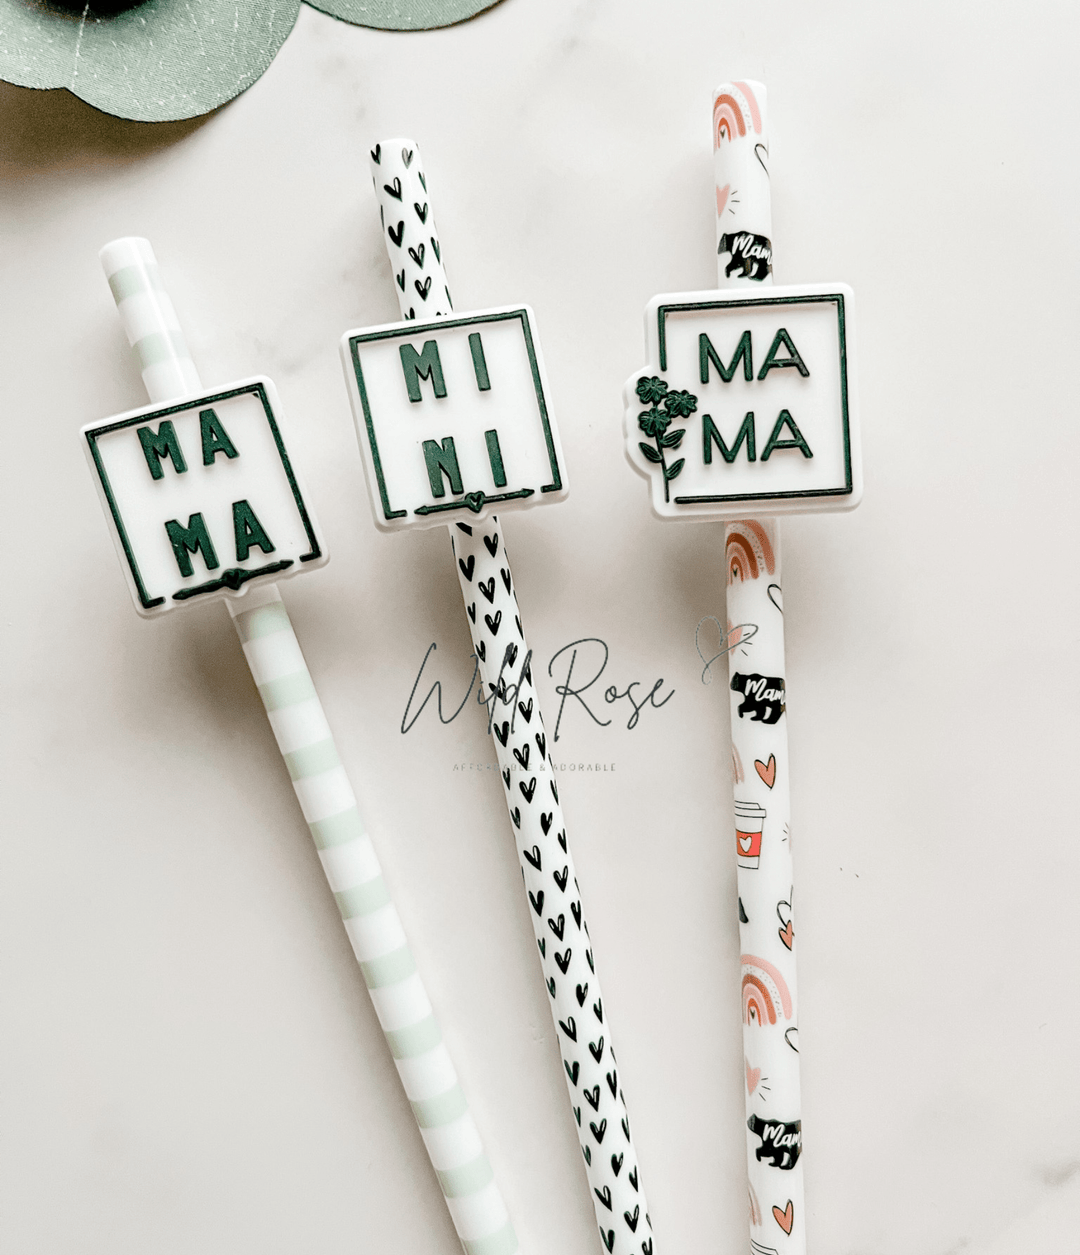 Mama/Mini straw accessory.